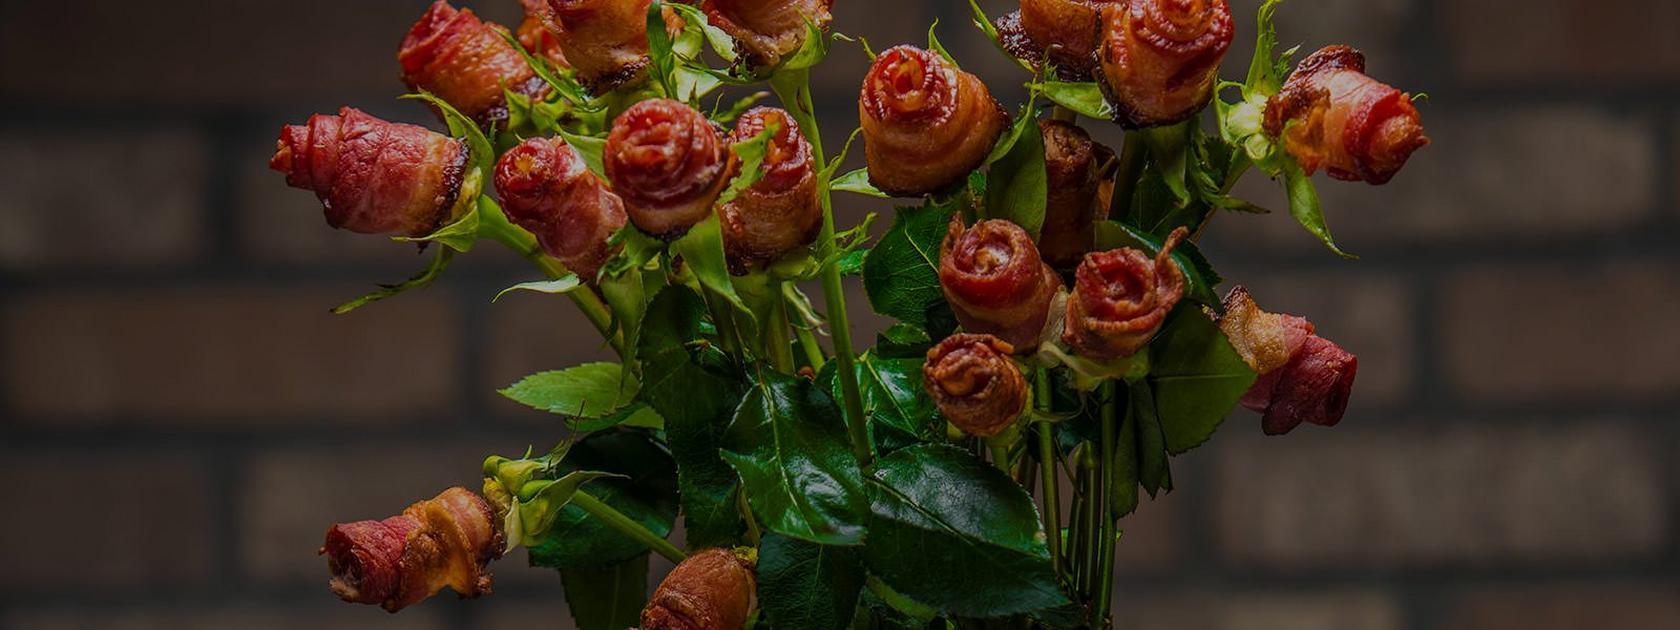 Comment faire des roses au bacon